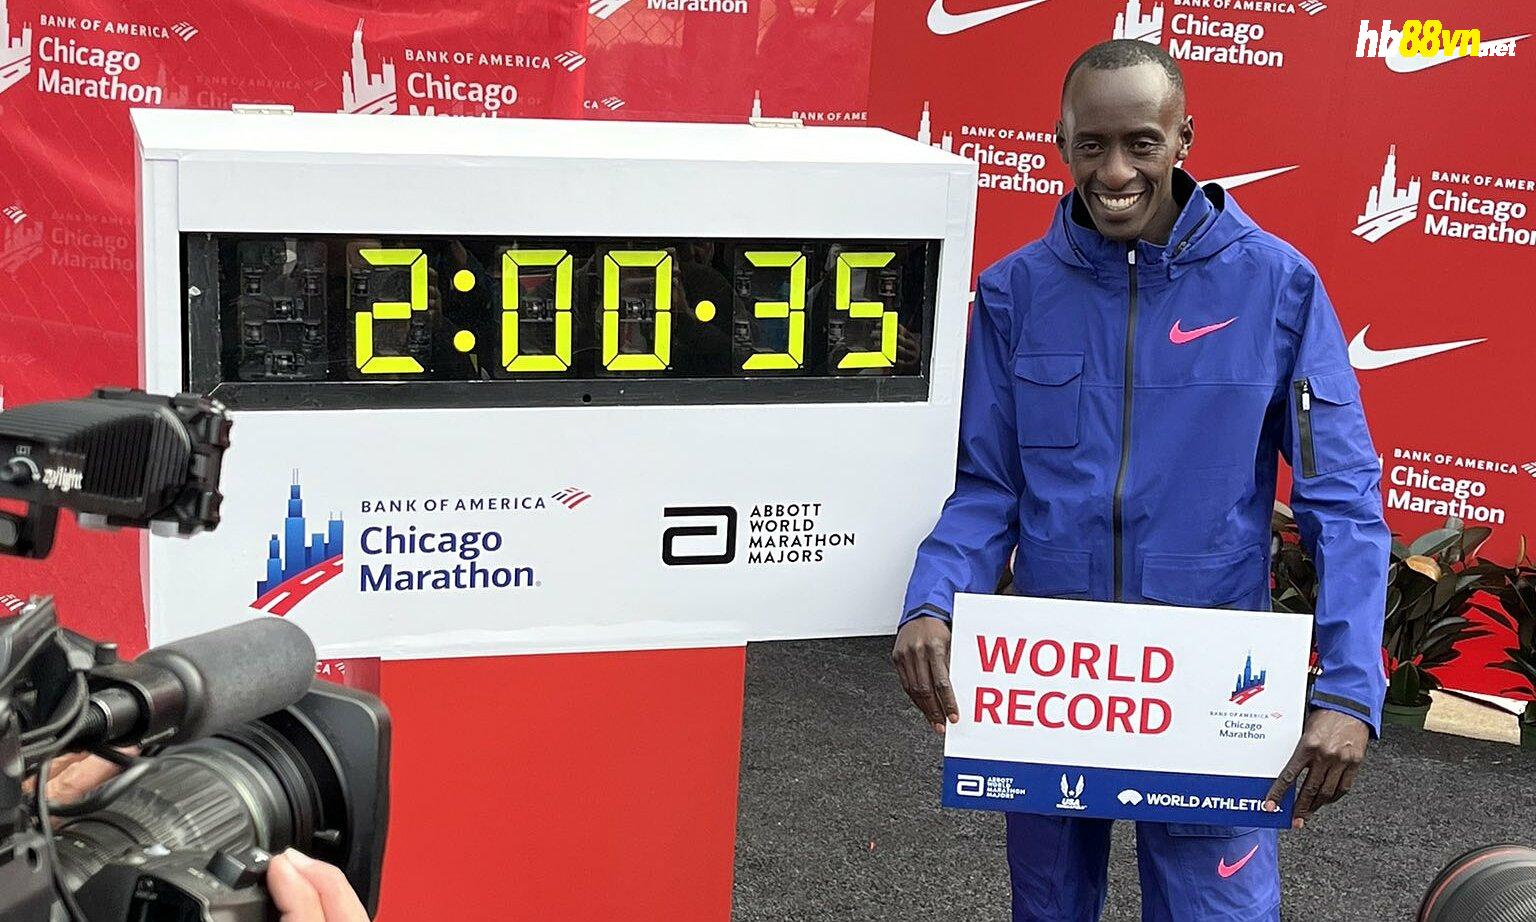 Kiptim mừng với tấm biển ghi kỷ lục thế giới cùng thông số anh vừa lập tại Chicago Marathon - 2 giờ 0 phút 35 giây - sau giải major sáng 8/10. Ảnh: Chicago Marathon